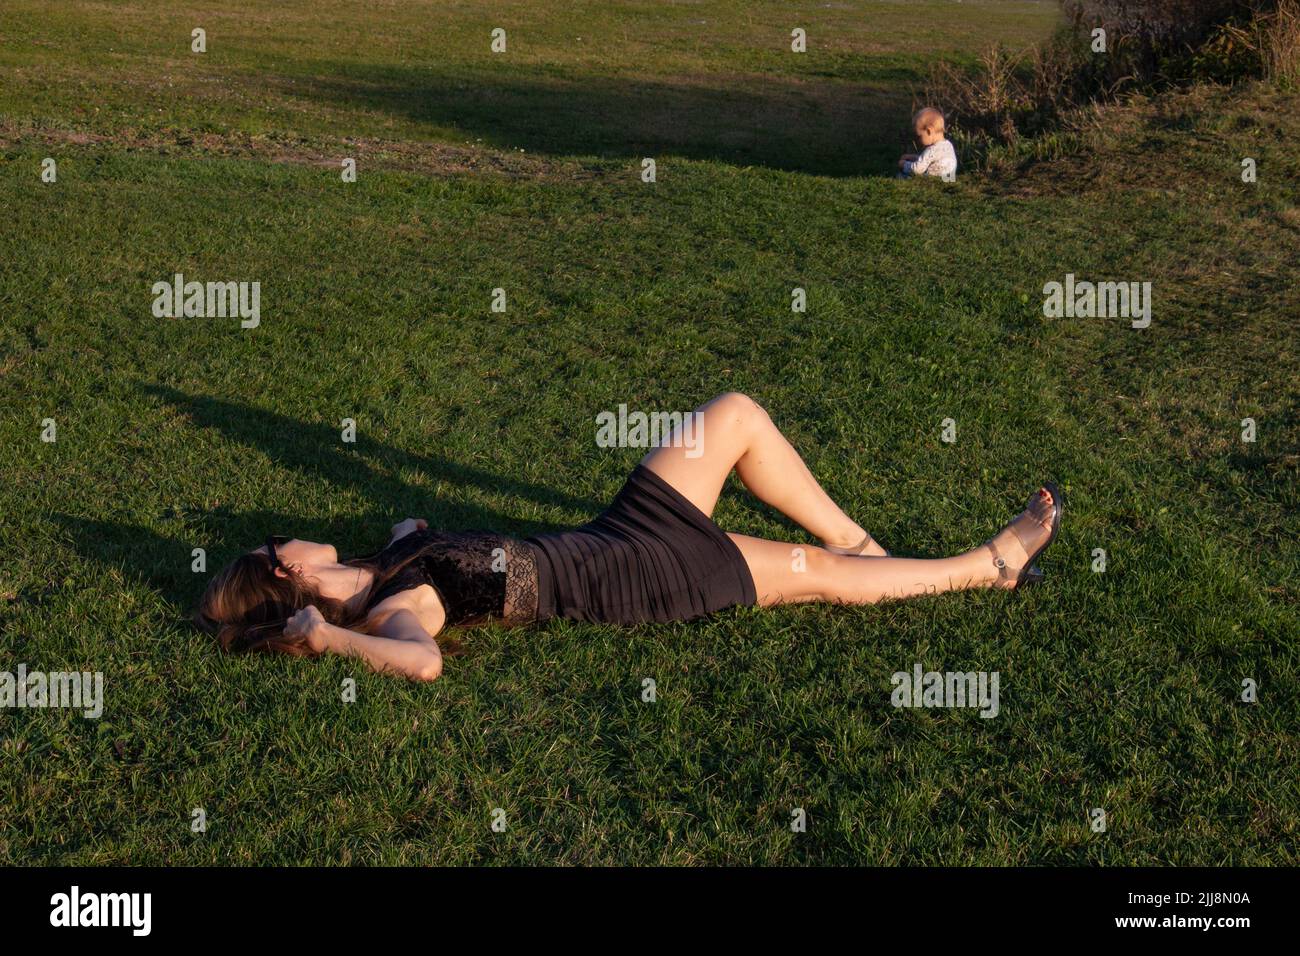 Madre e bambino fuori, madre esausta che riposa mentre il bambino gioca sull'erba Foto Stock